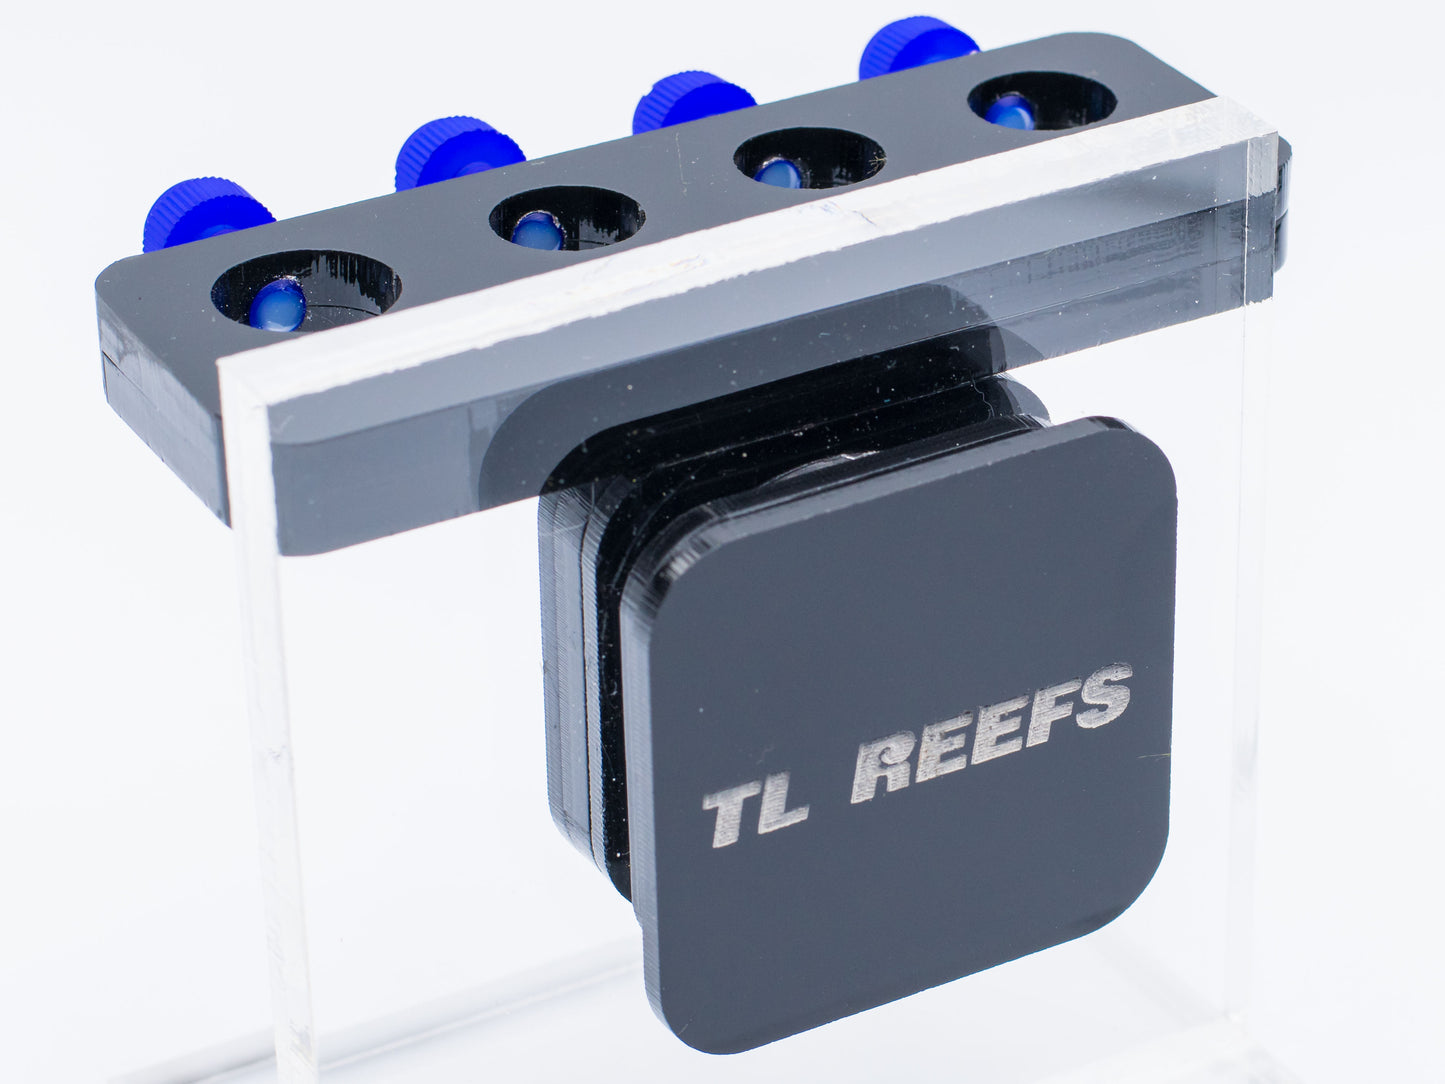 TL Reefs Magnetic Probe Holder